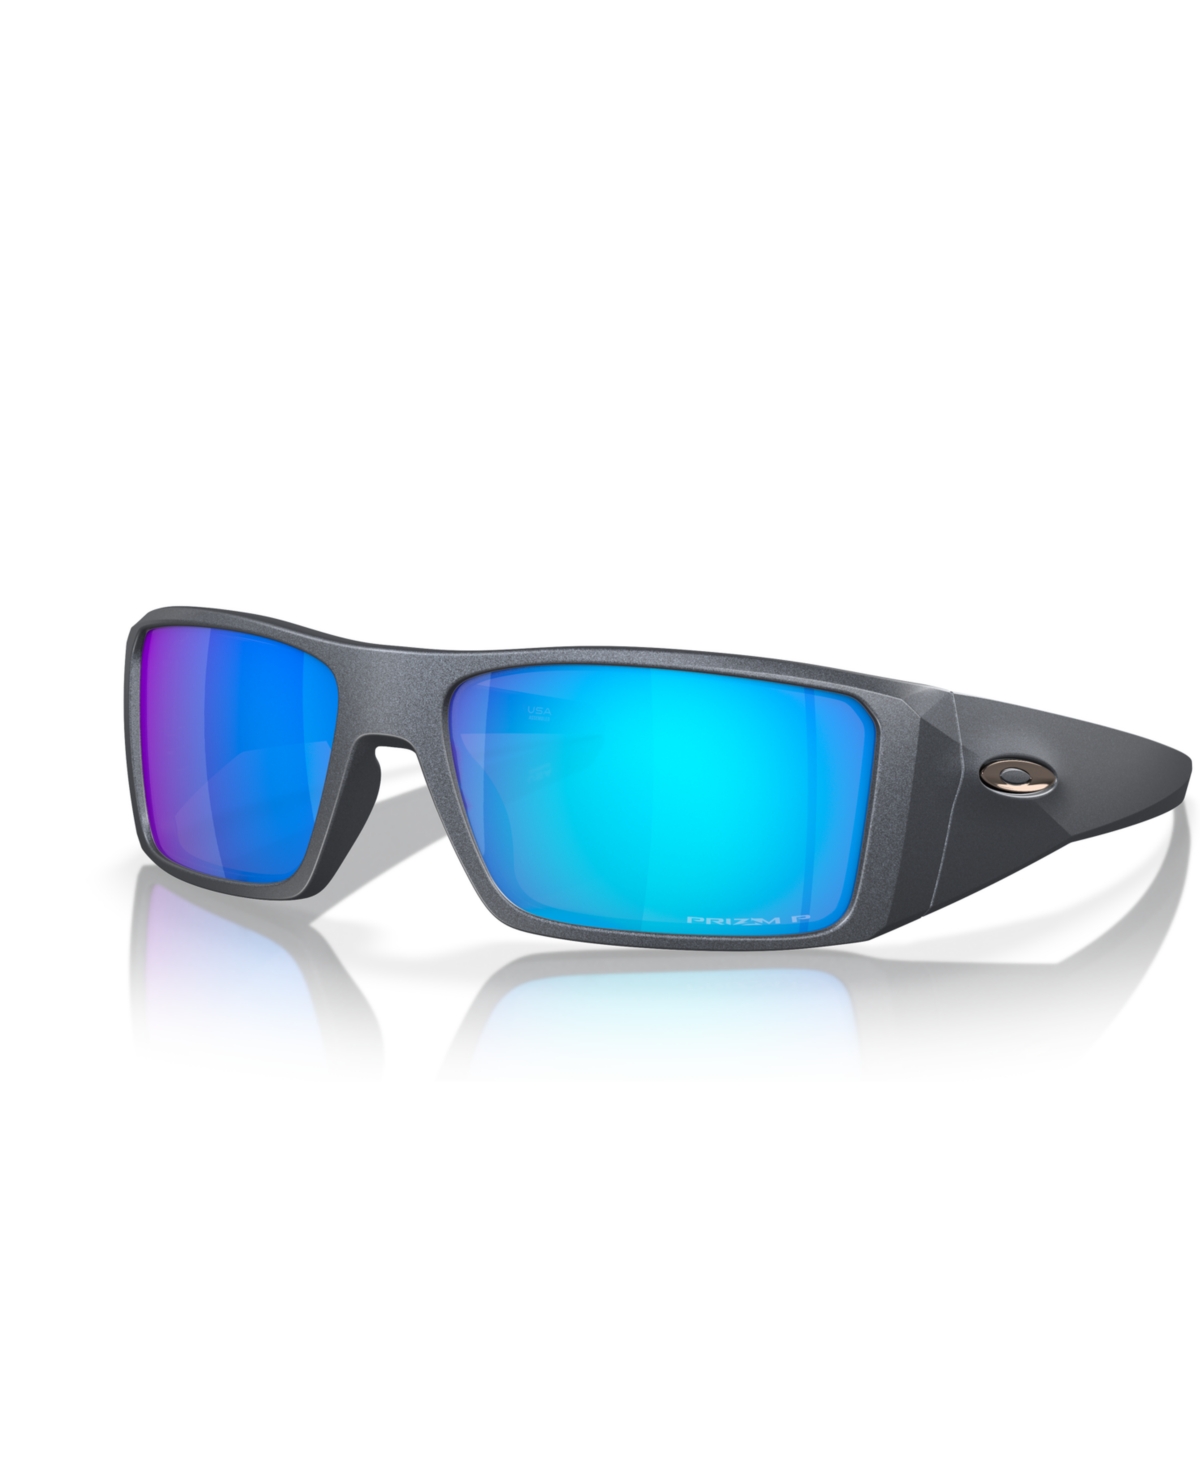 Oakley Men's Polarized Sunglasses, Heliostat In Blue Steel